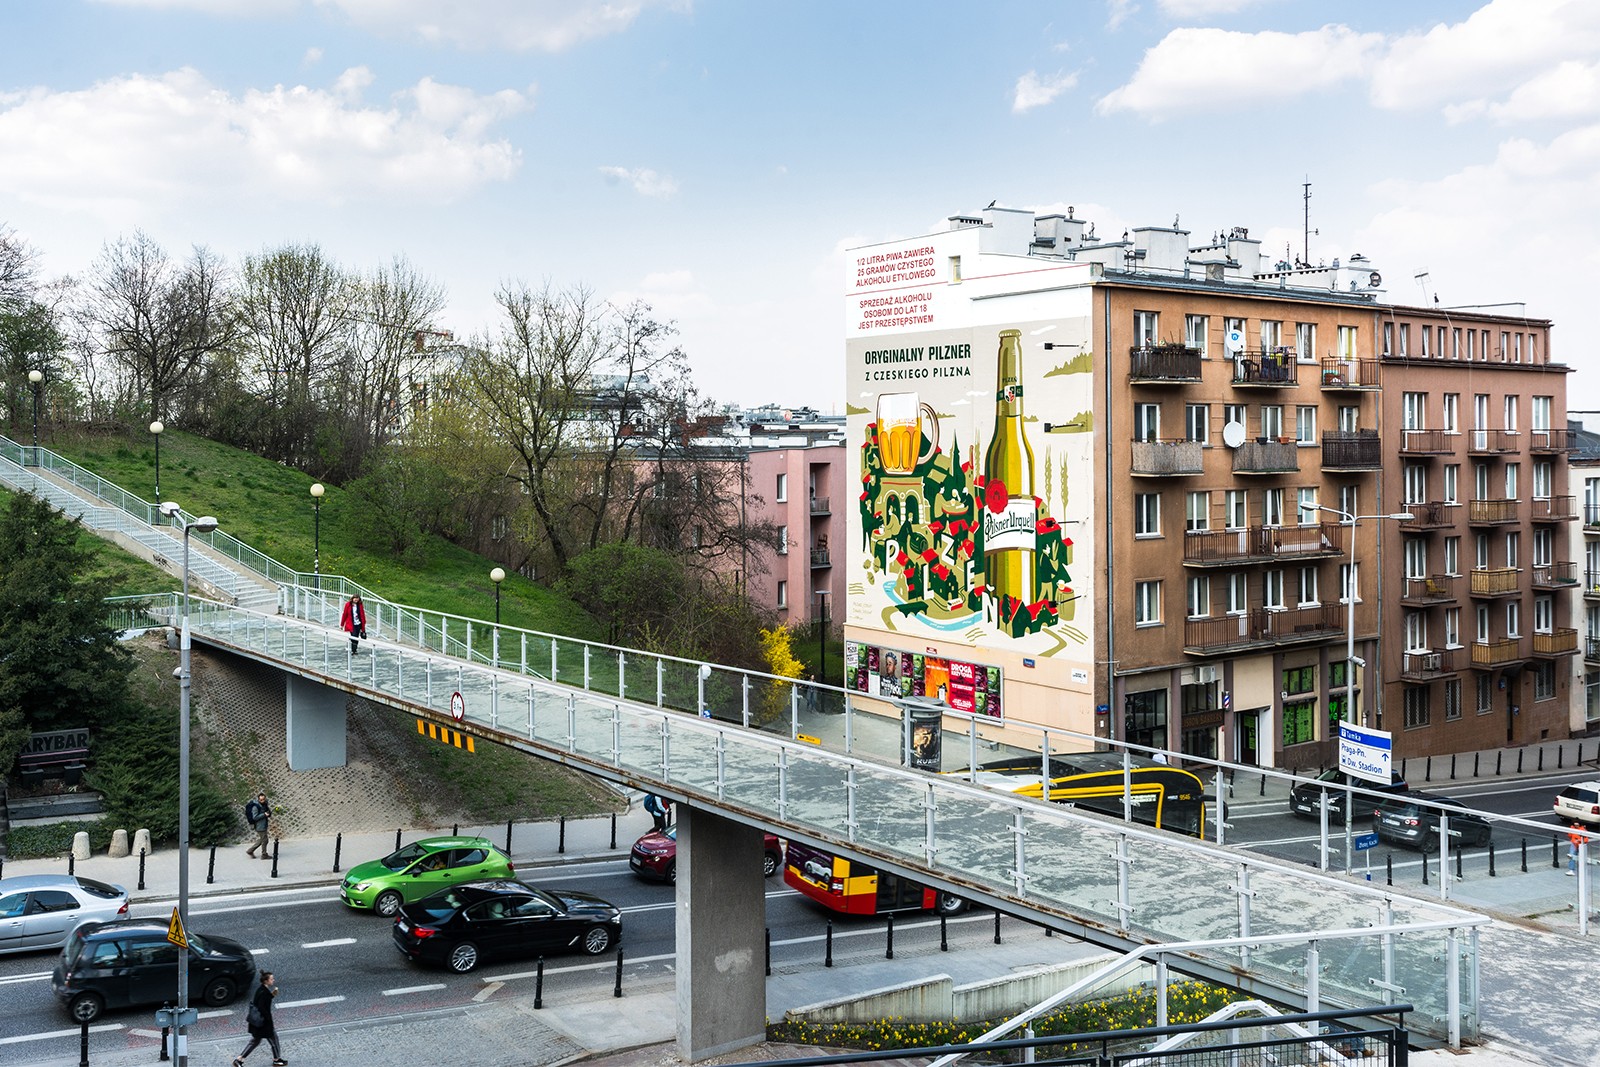 Mural Pilsner Urquell przy ulicy Tamka 36 w Warszawie | Oryginalny pilzner z czeskiego Pilzna | Portfolio